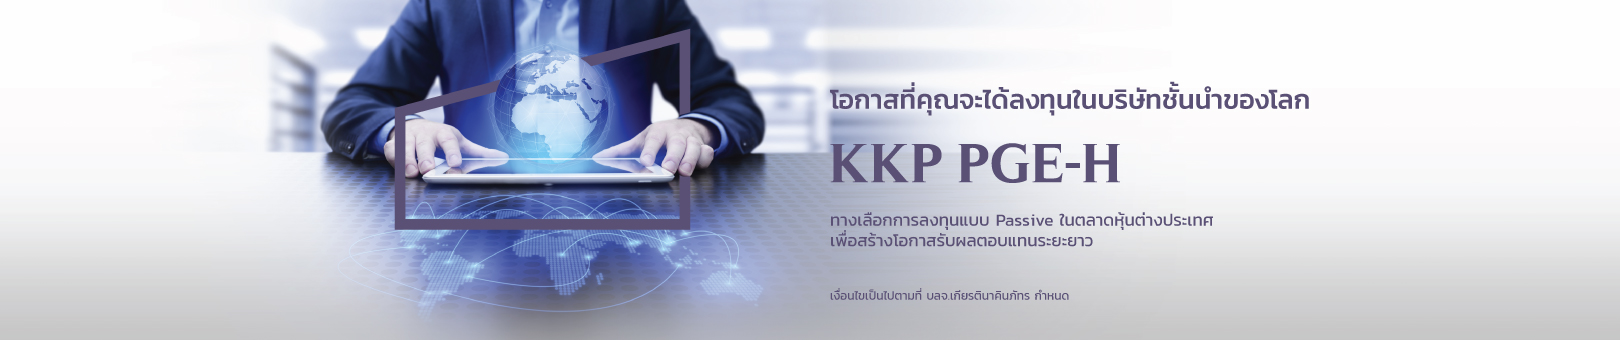 KKP-PGE-H_1620x340